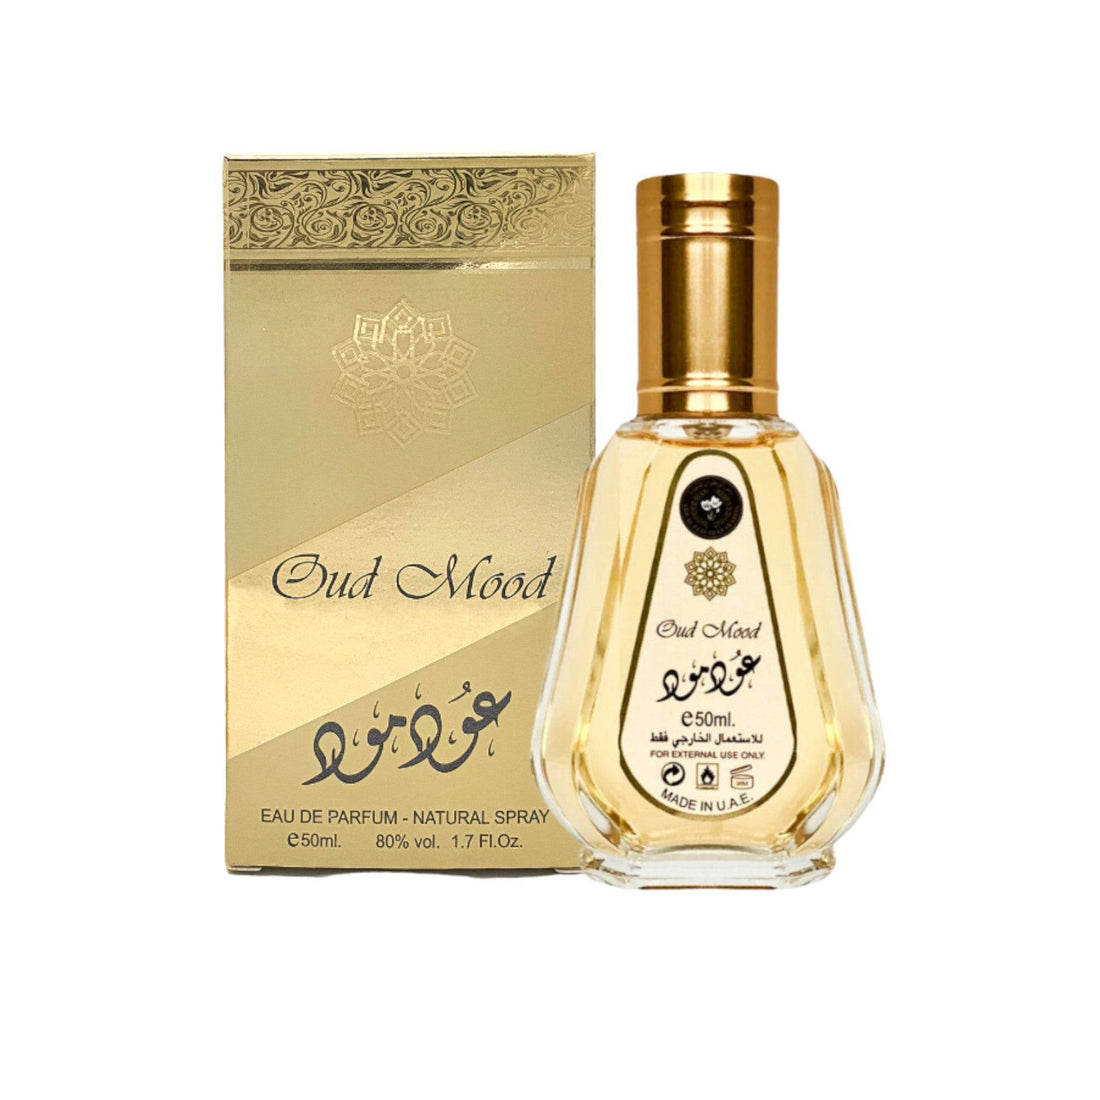 Oud Mood 50ml Eau de Parfum by Ard Al Zaafaran in a sleek bottle, showcasing its luxurious oriental woody fragrance.